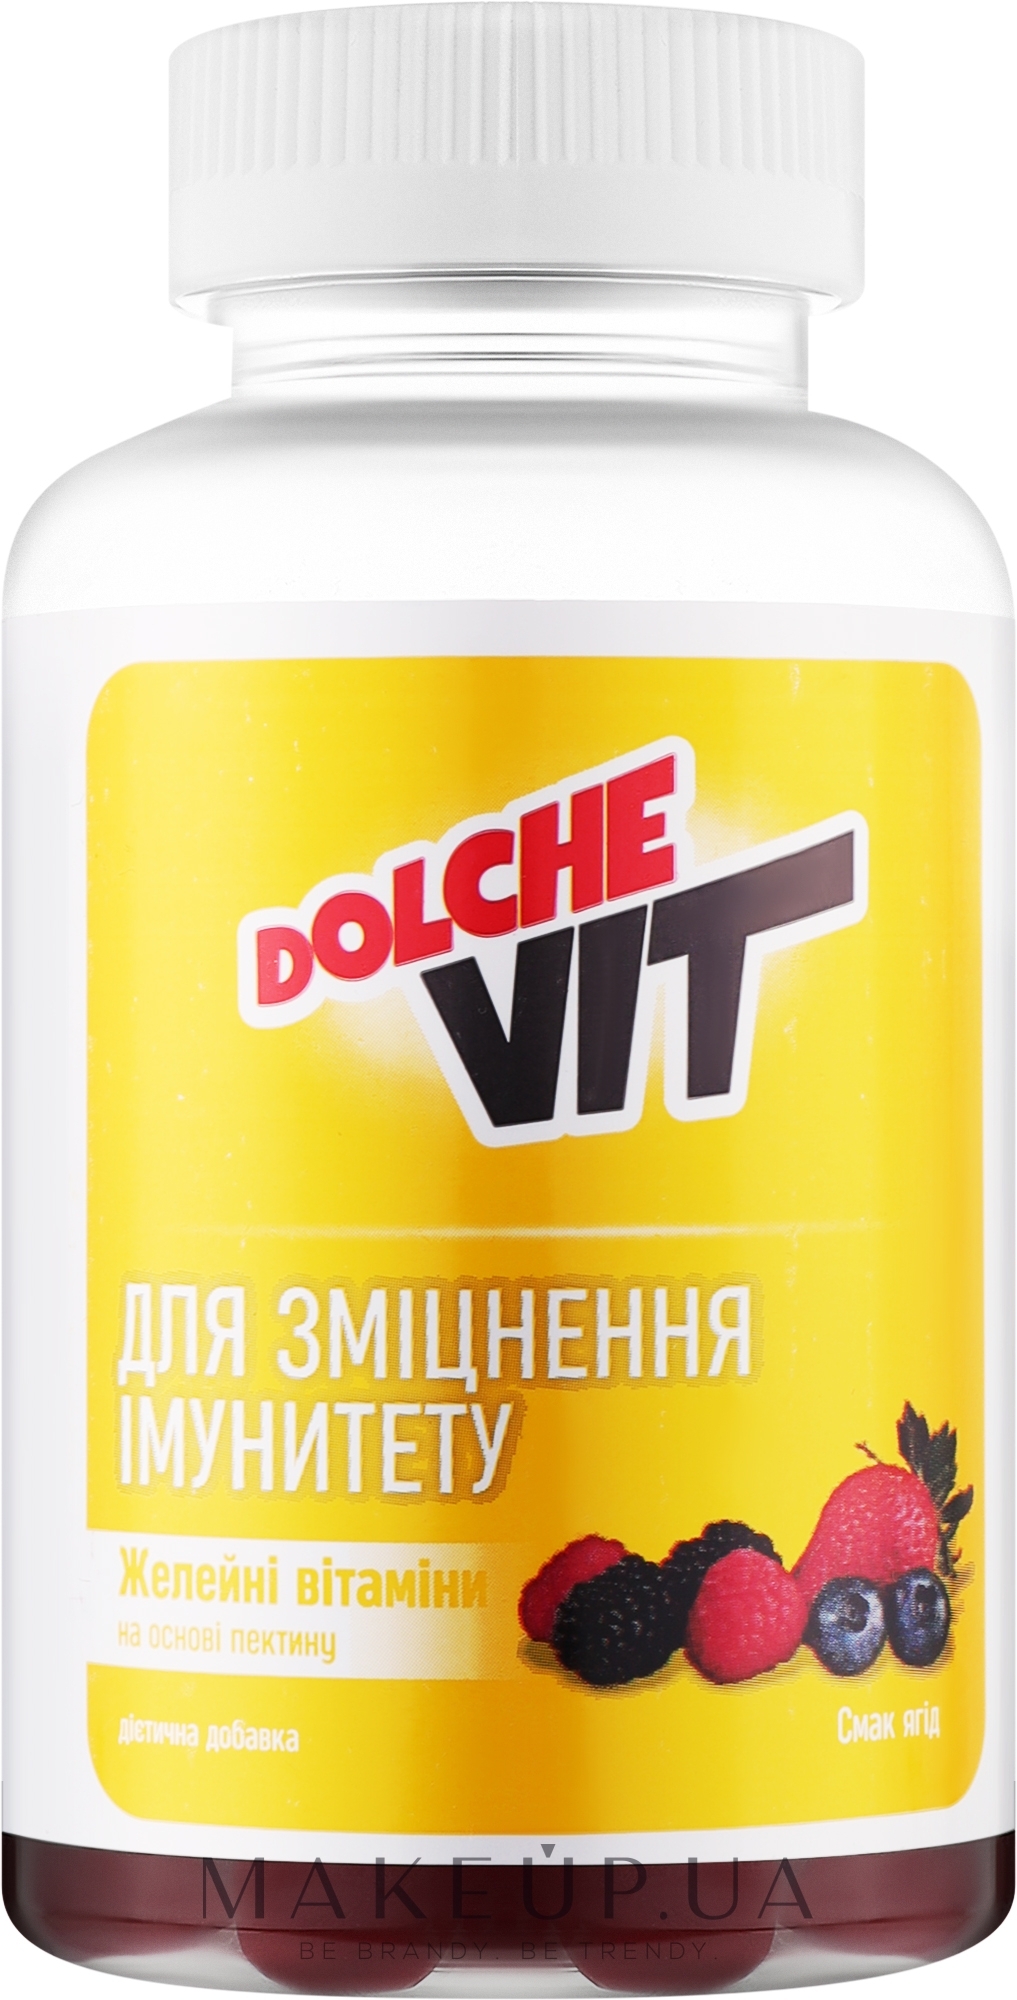 Желейні вітаміни на основі пектину для зміцнення імунітету, смак ягід - Dolche Vit — фото 60шт